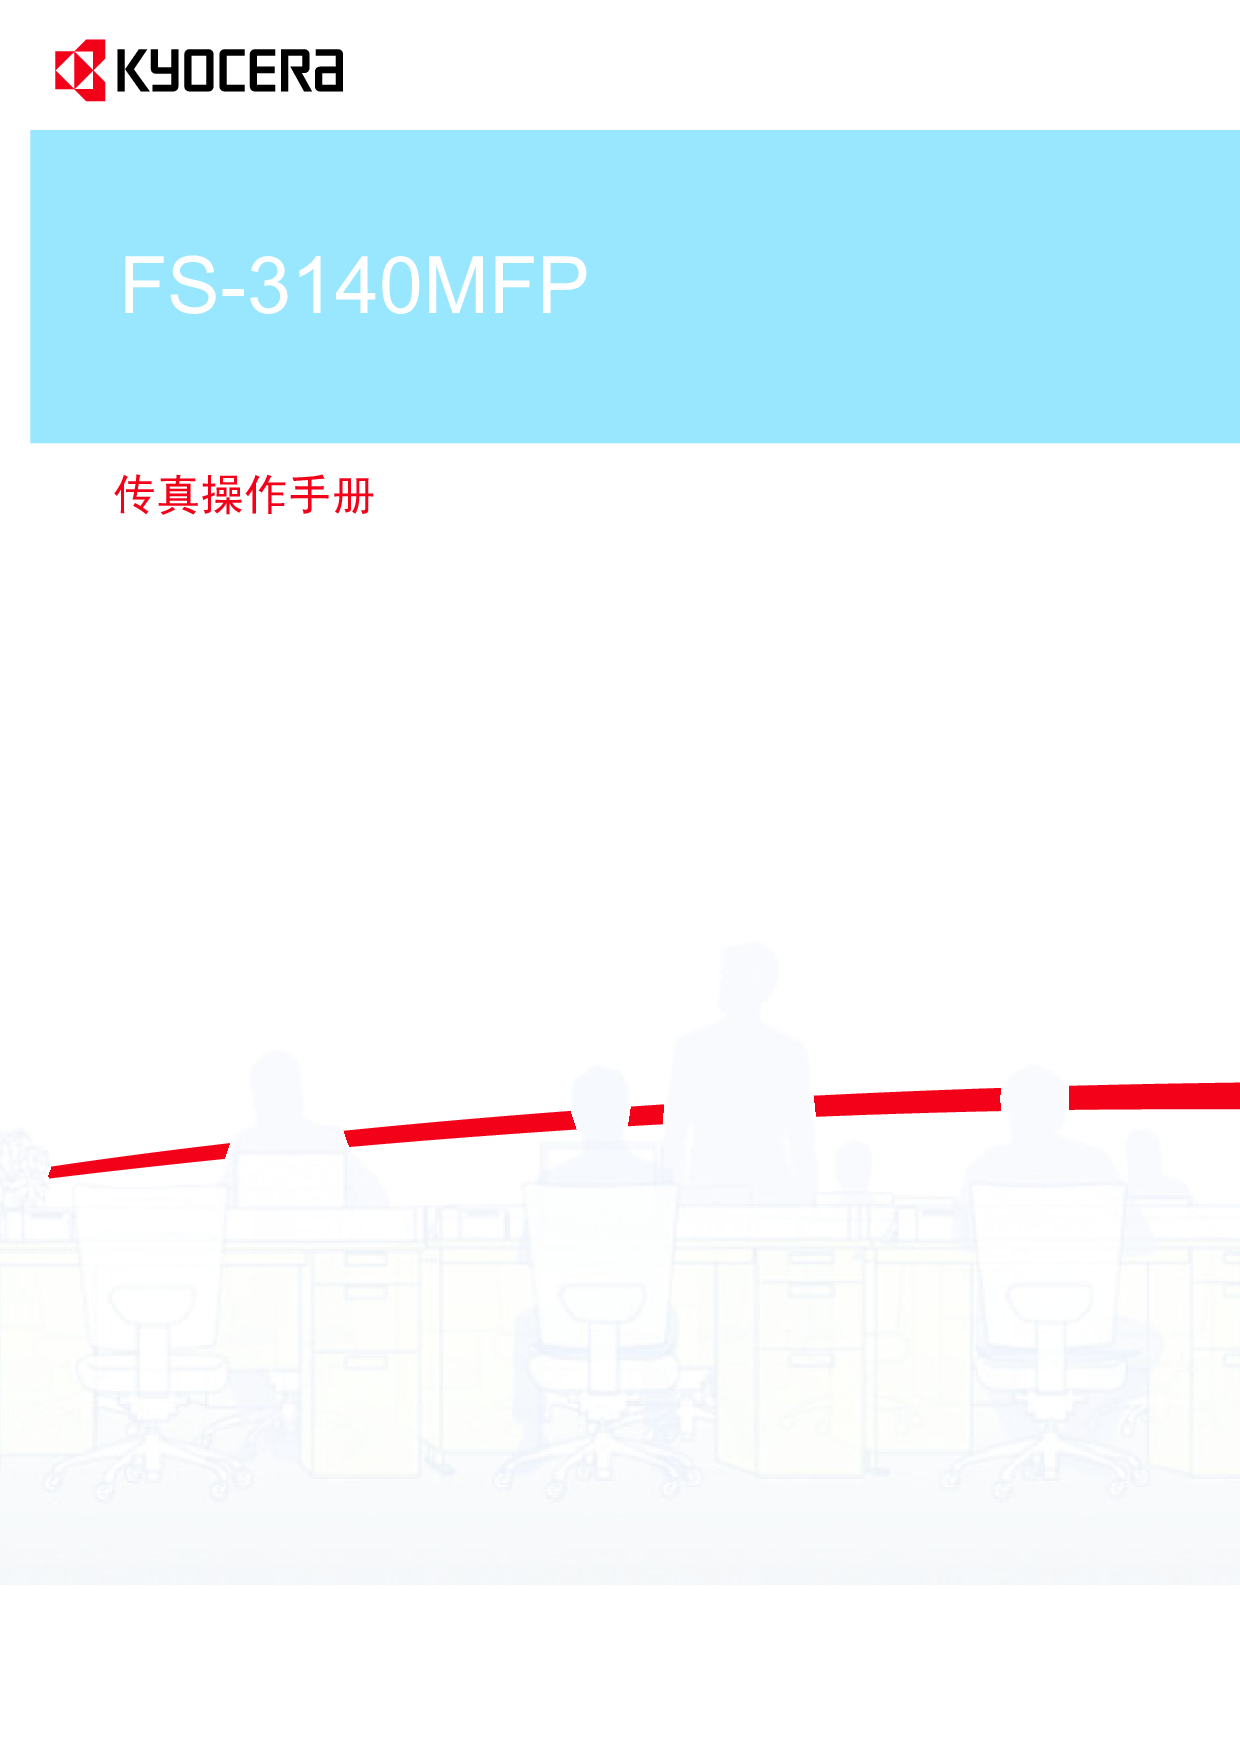 京瓷 Kyocera FS-3140MFP 传真 操作手册 封面